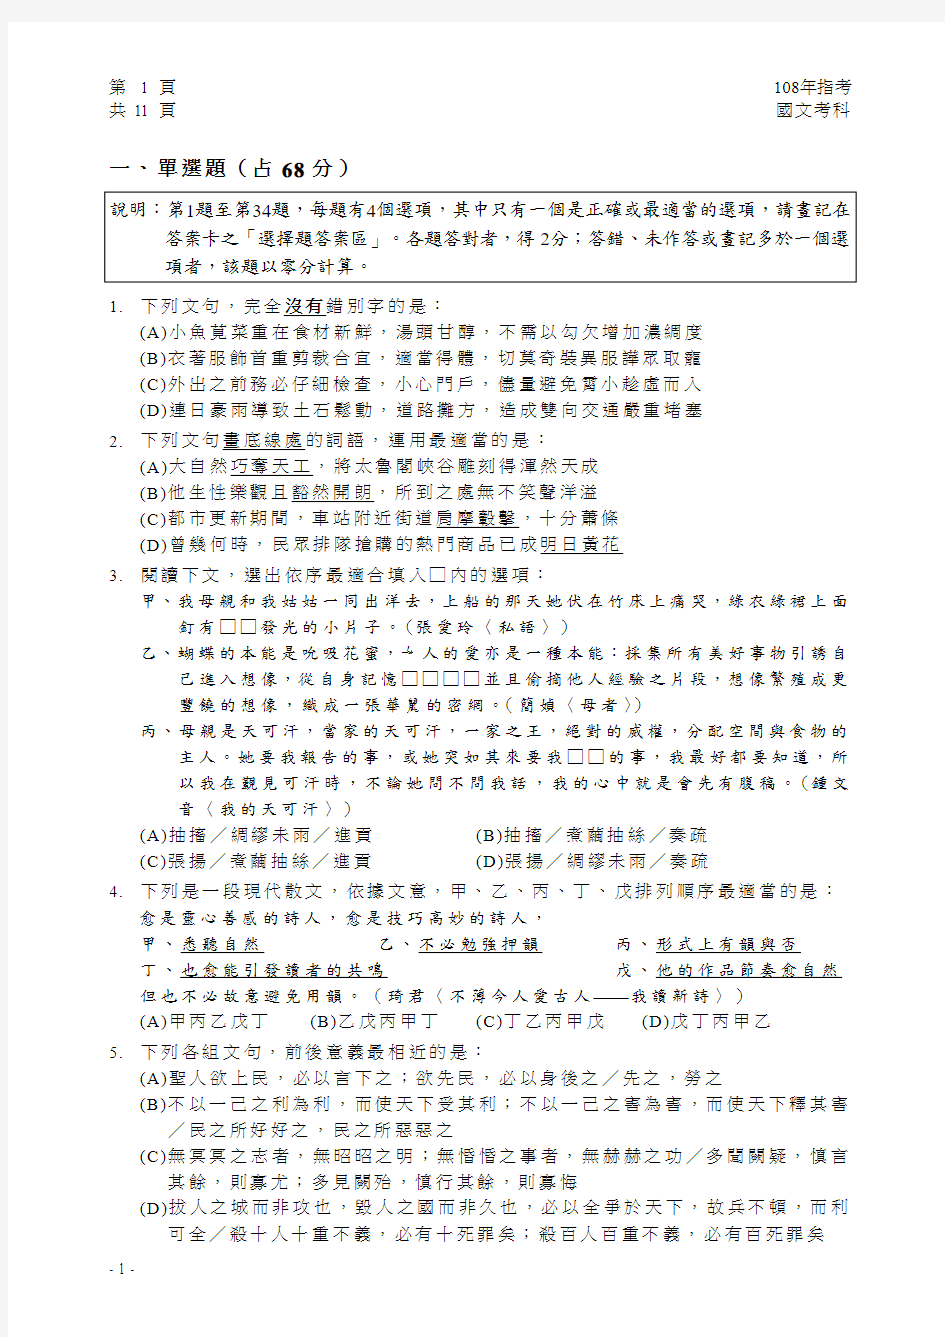 2019台湾大学入学考试试题01-108指考国文试卷定稿